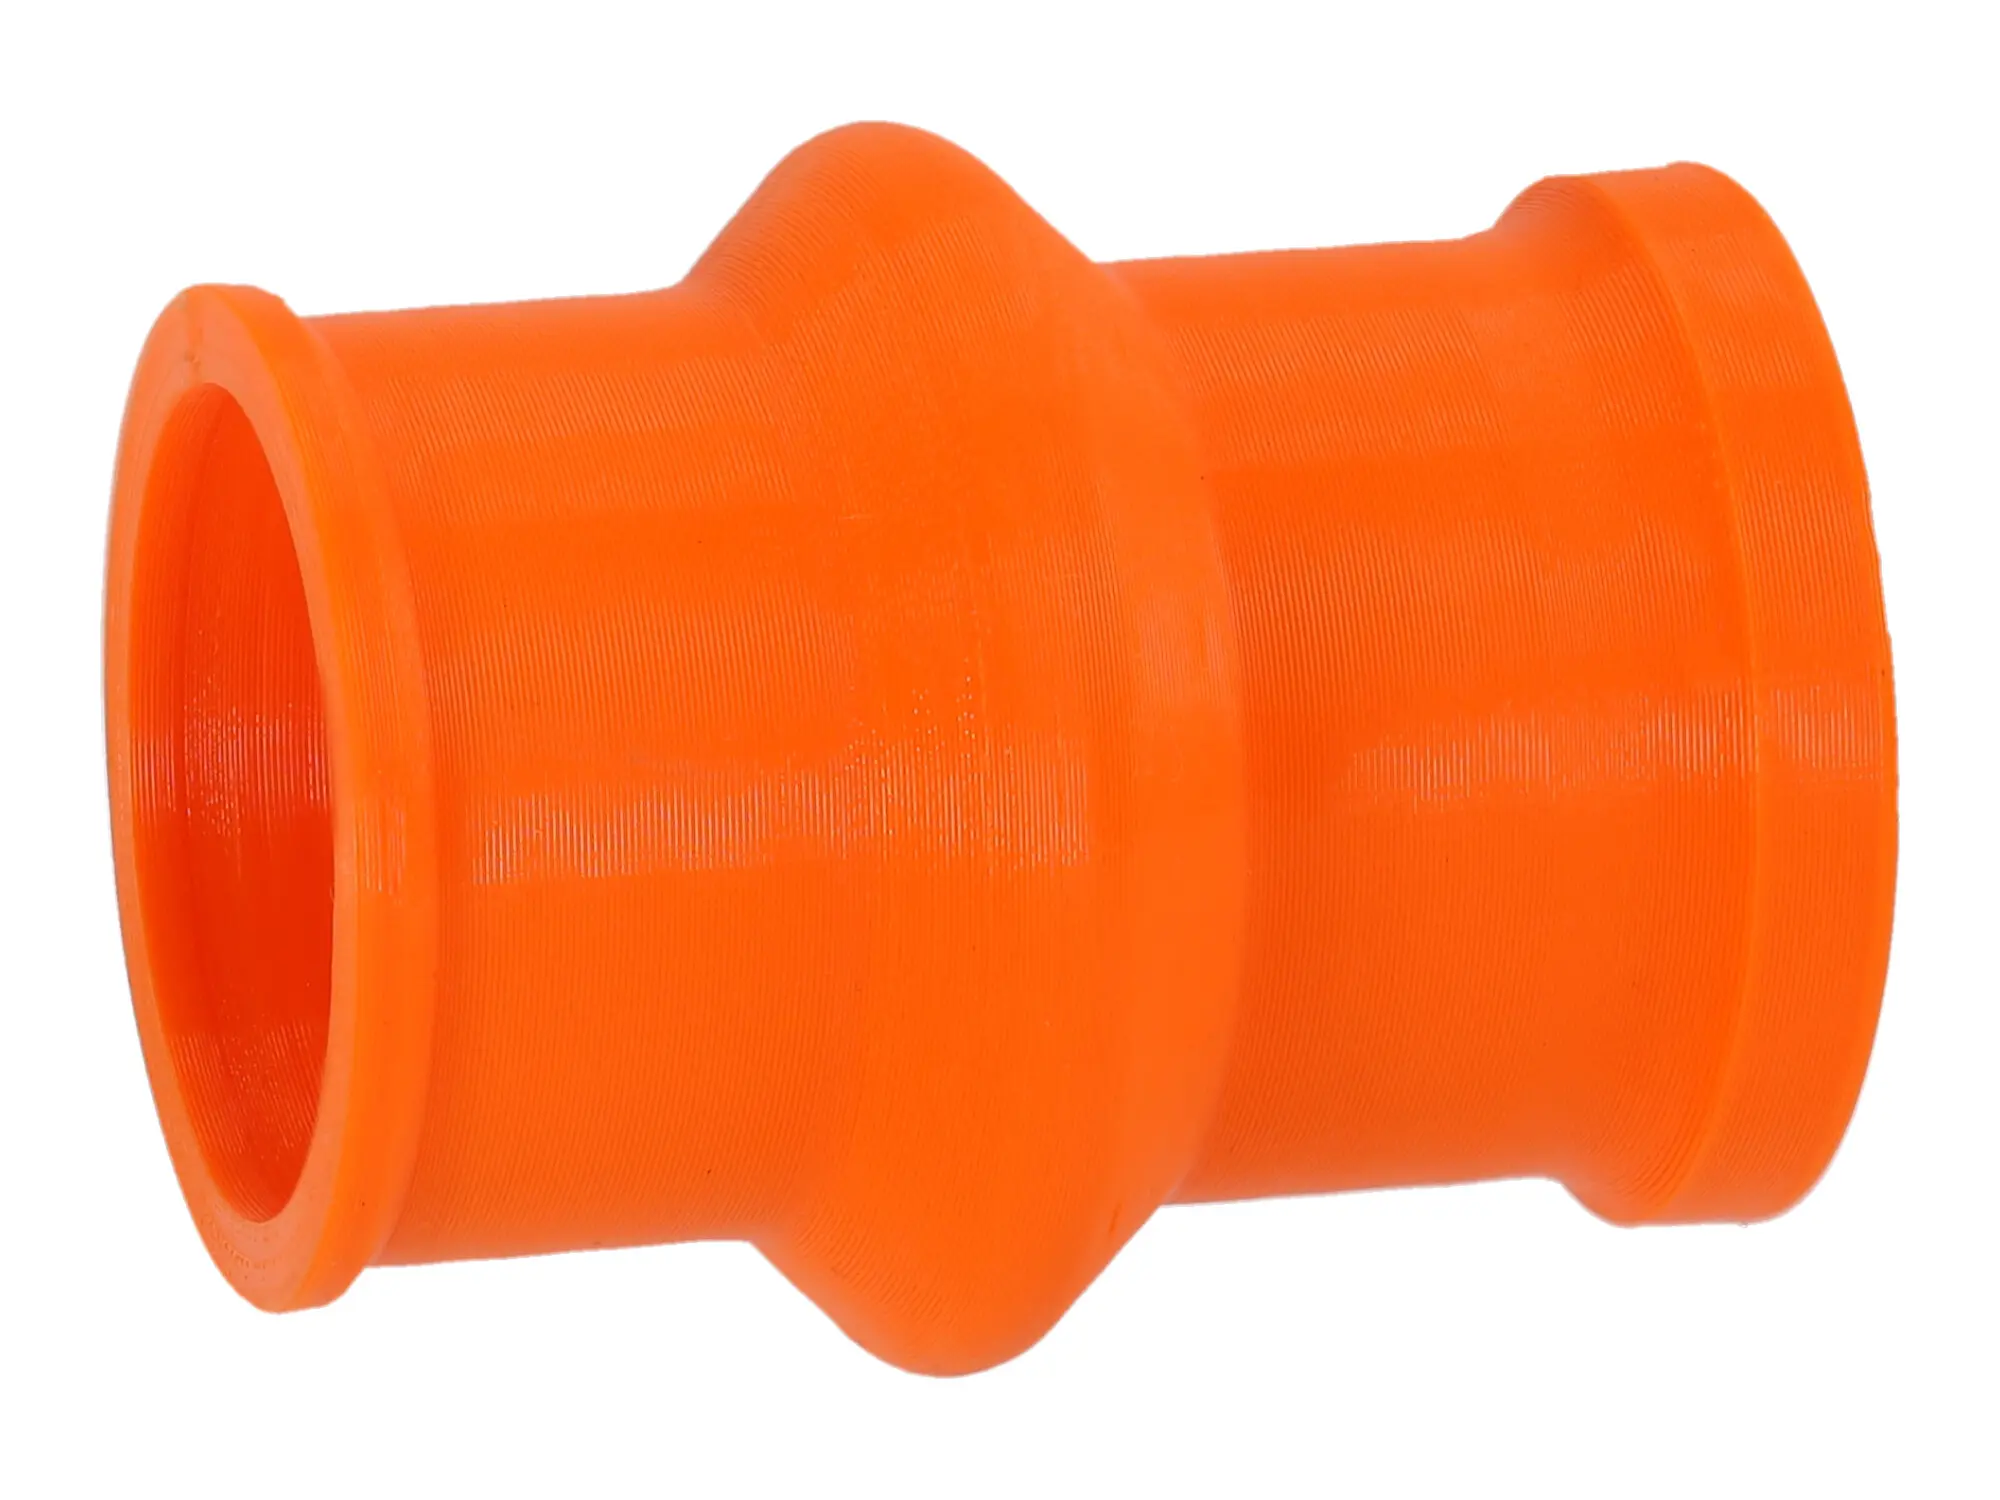 Ansaugmuffe Orange, 3D-Druck, für Gehäusemittelteil Original auf Vergaser - für S51, S50, S70, S53, S83, Art.-Nr.: 10072102 - Bild 1